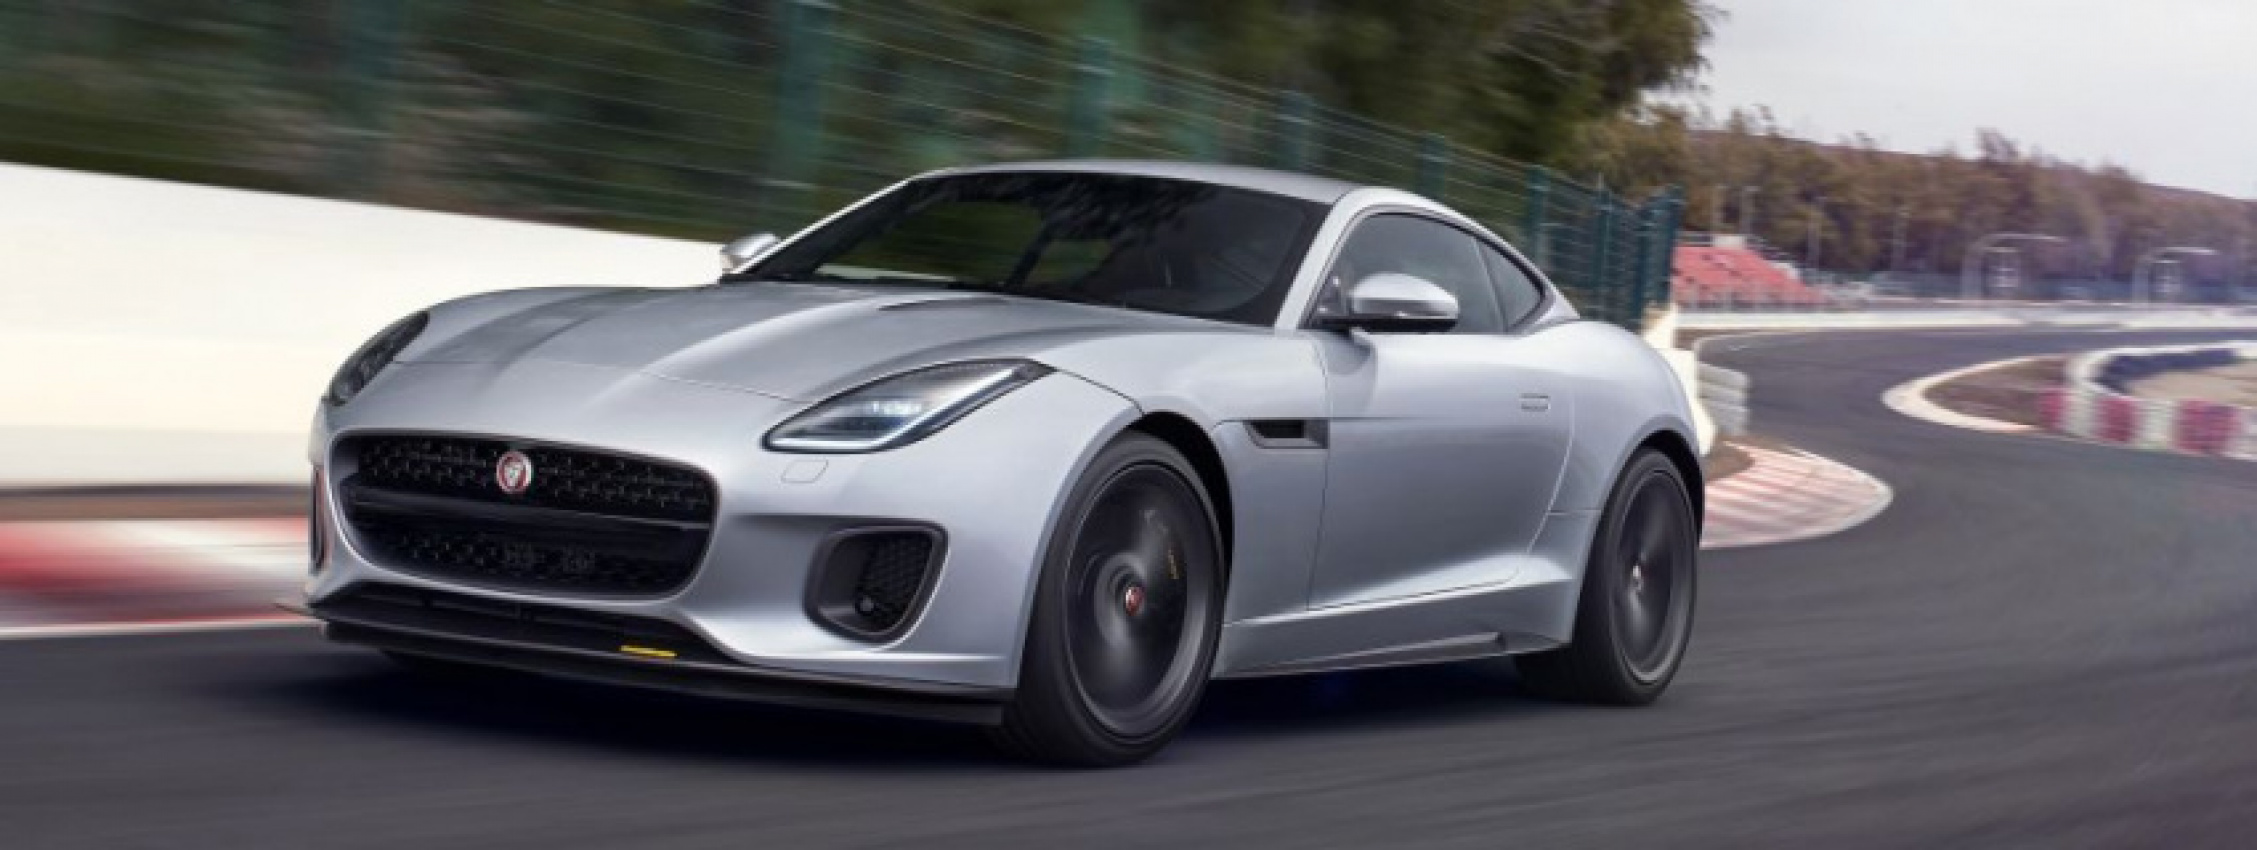 autos, cars, jaguar, autos jaguar f-type, jaguar launches special edition f-type